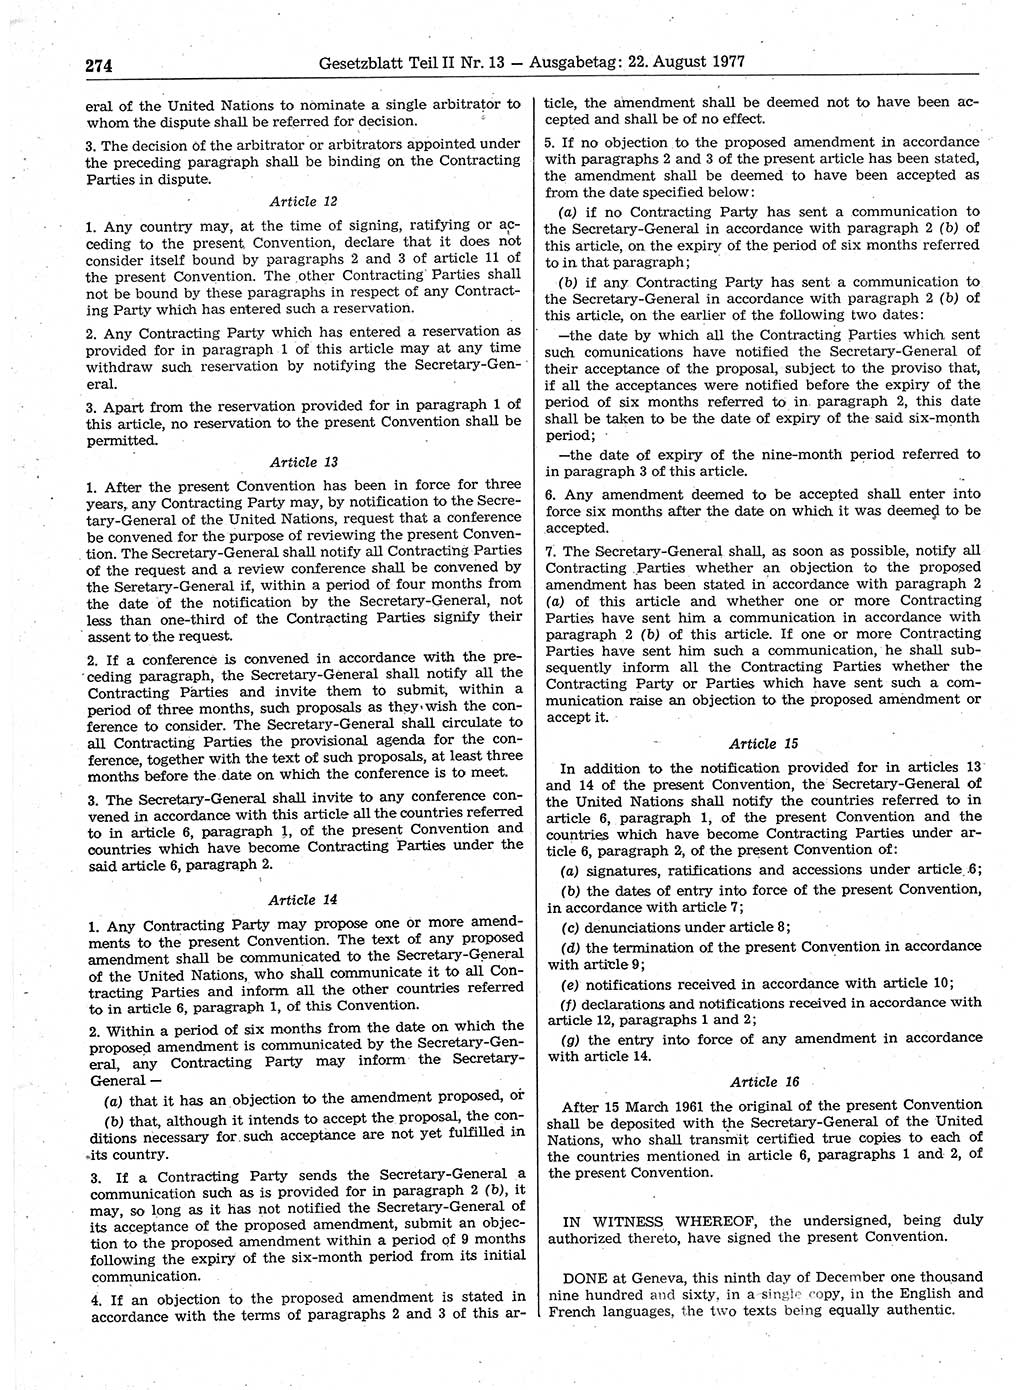 Gesetzblatt (GBl.) der Deutschen Demokratischen Republik (DDR) Teil ⅠⅠ 1977, Seite 274 (GBl. DDR ⅠⅠ 1977, S. 274)